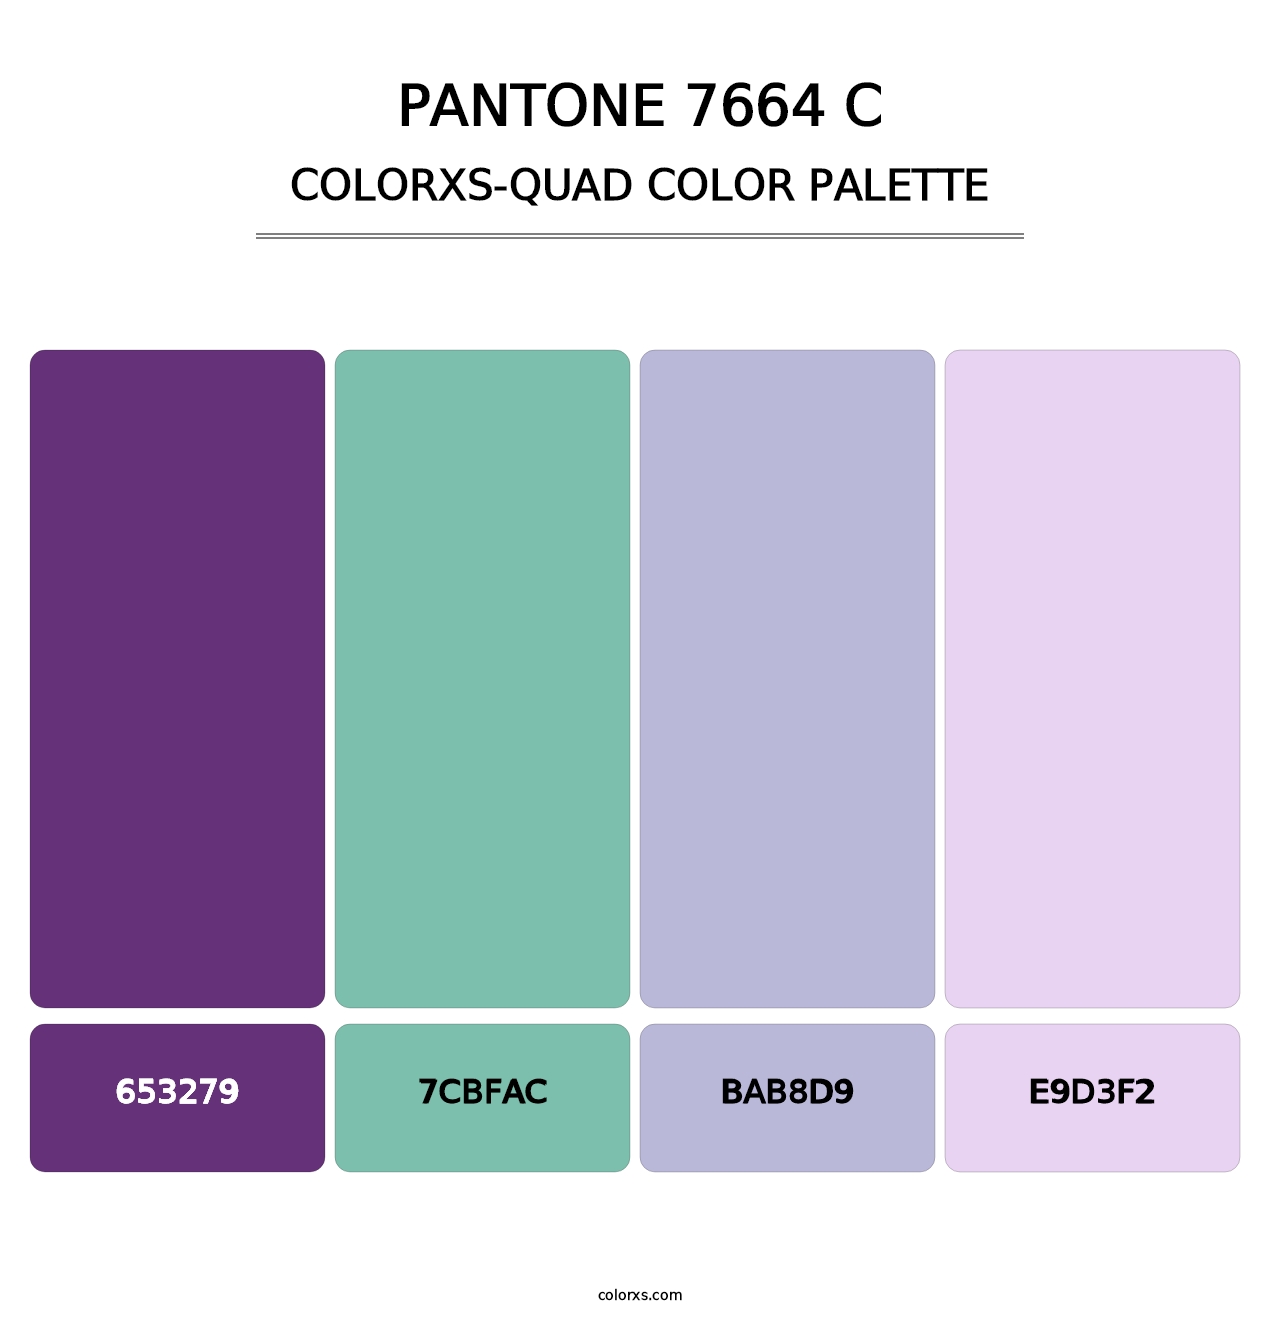 PANTONE 7664 C - Colorxs Quad Palette